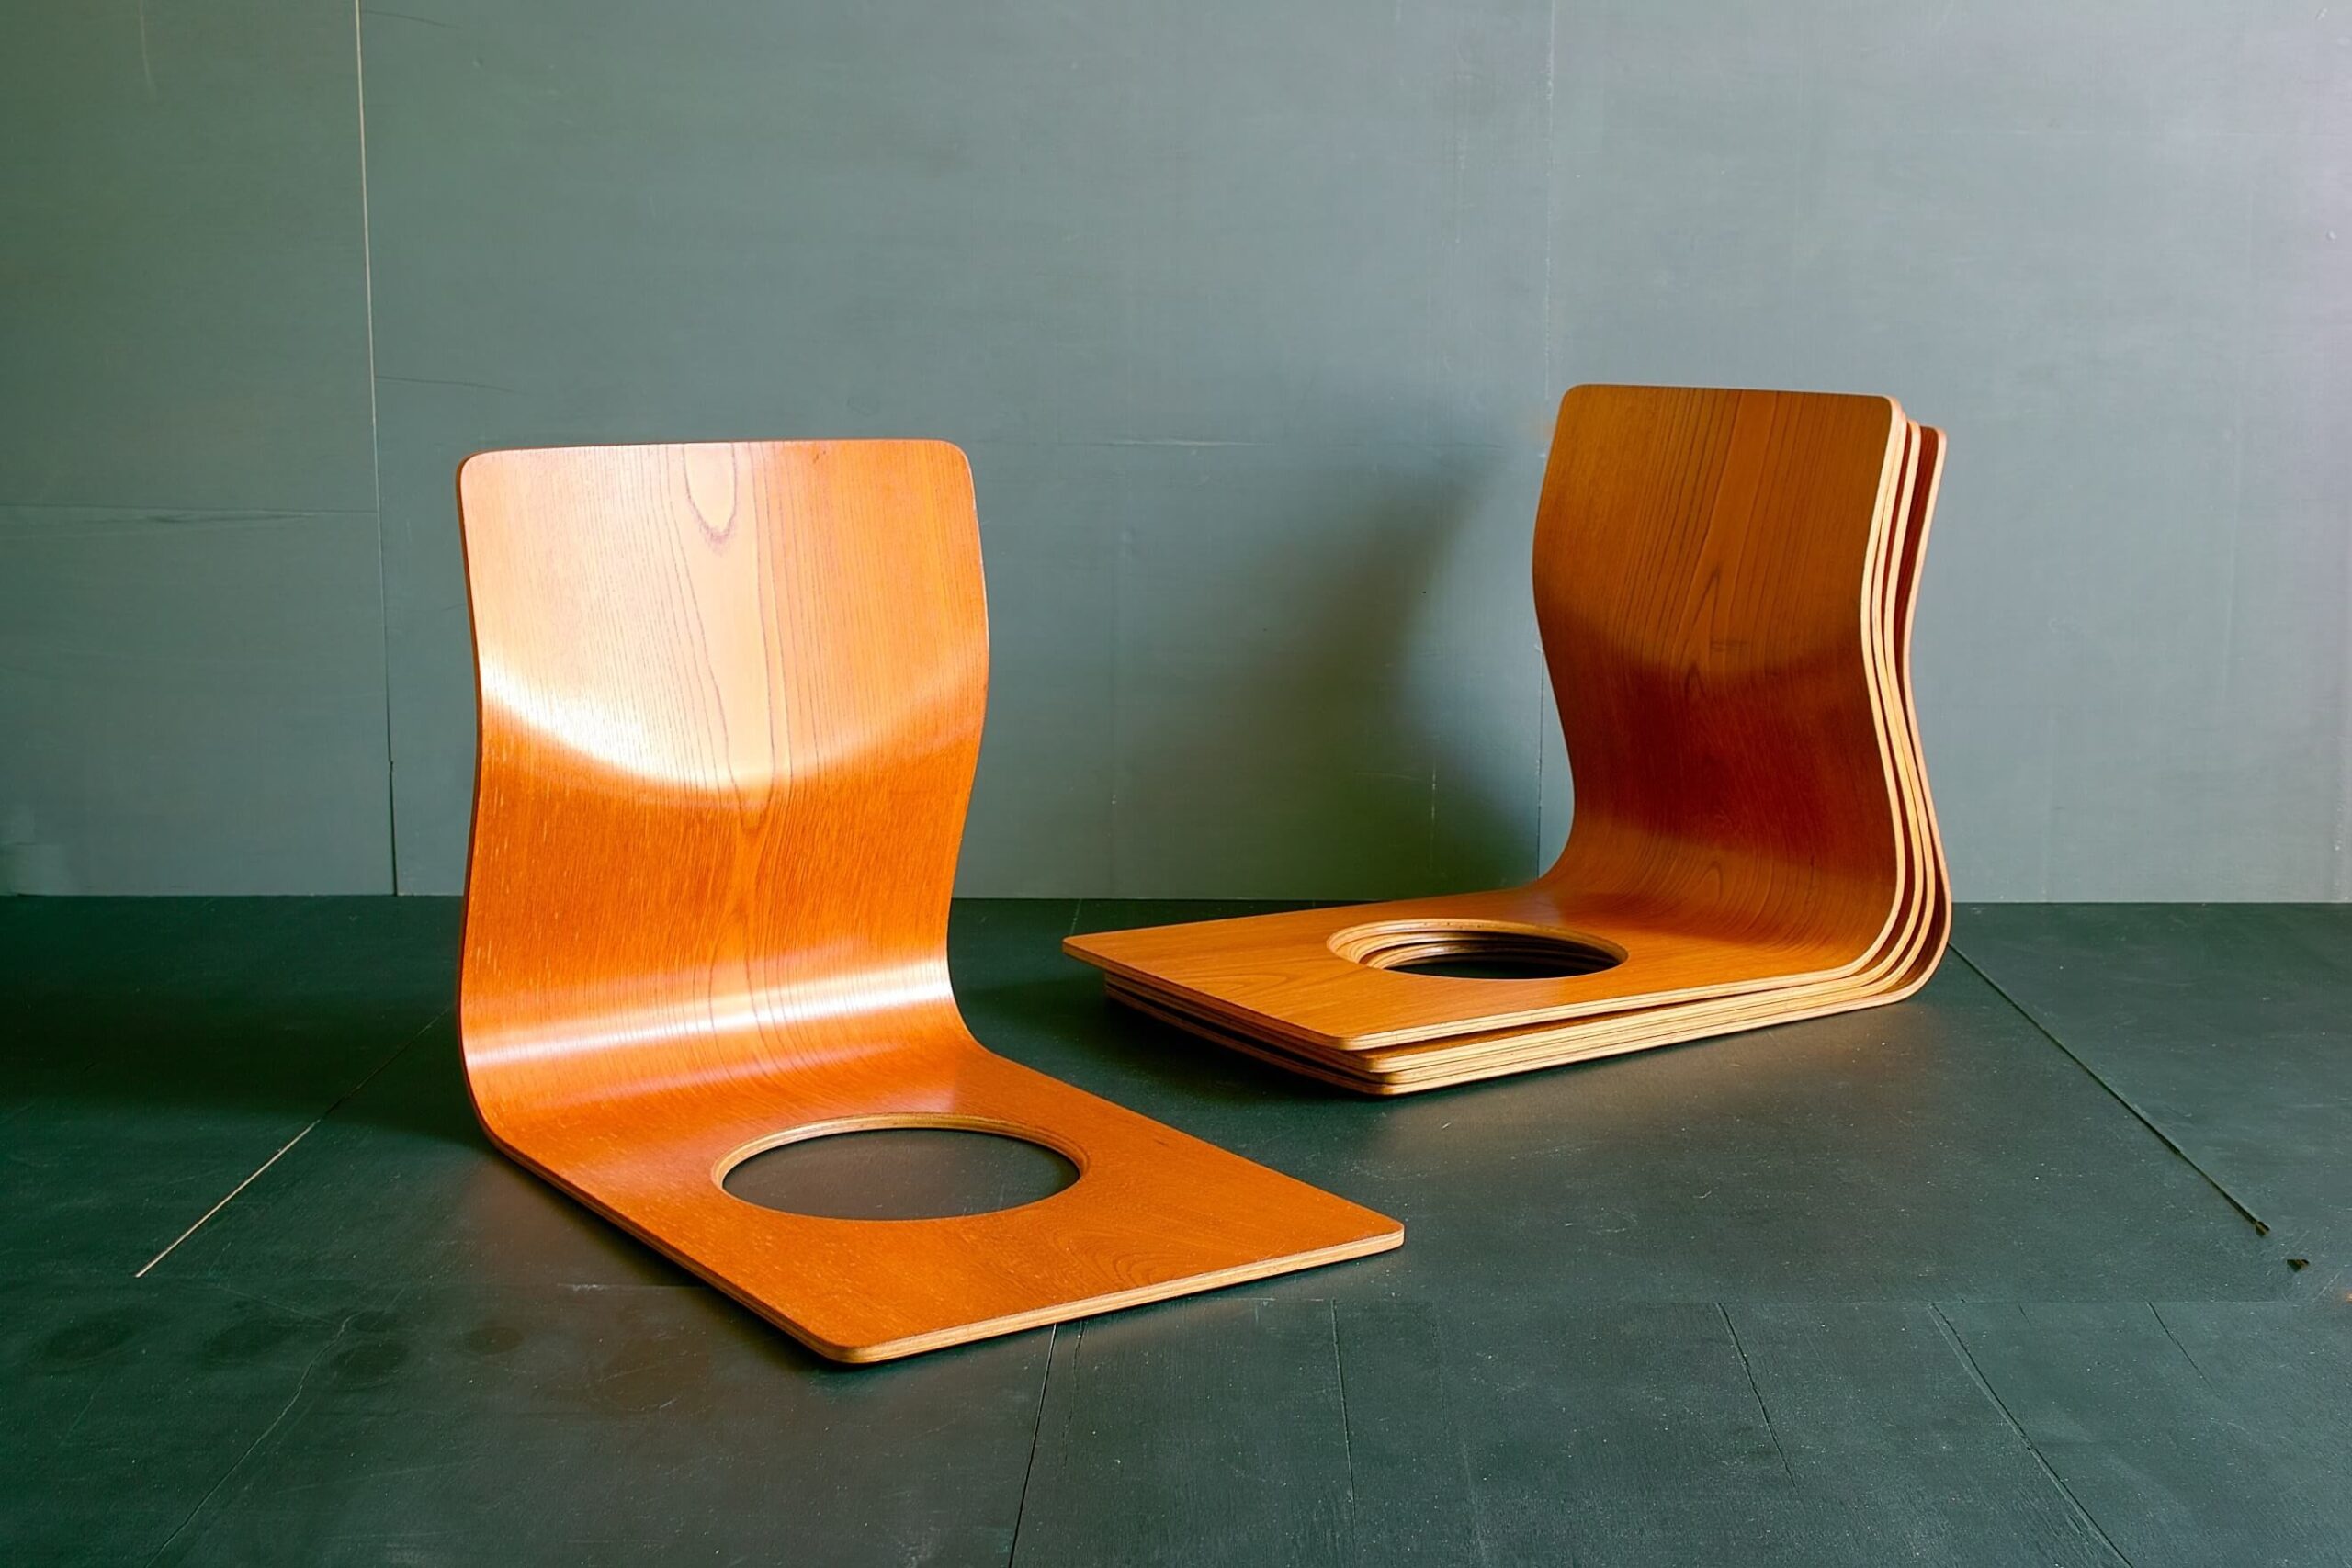 【傷や汚れあり】座椅子 木製 天童木工  藤森健次デザイン 4個組天童木工ホームページから抜粋